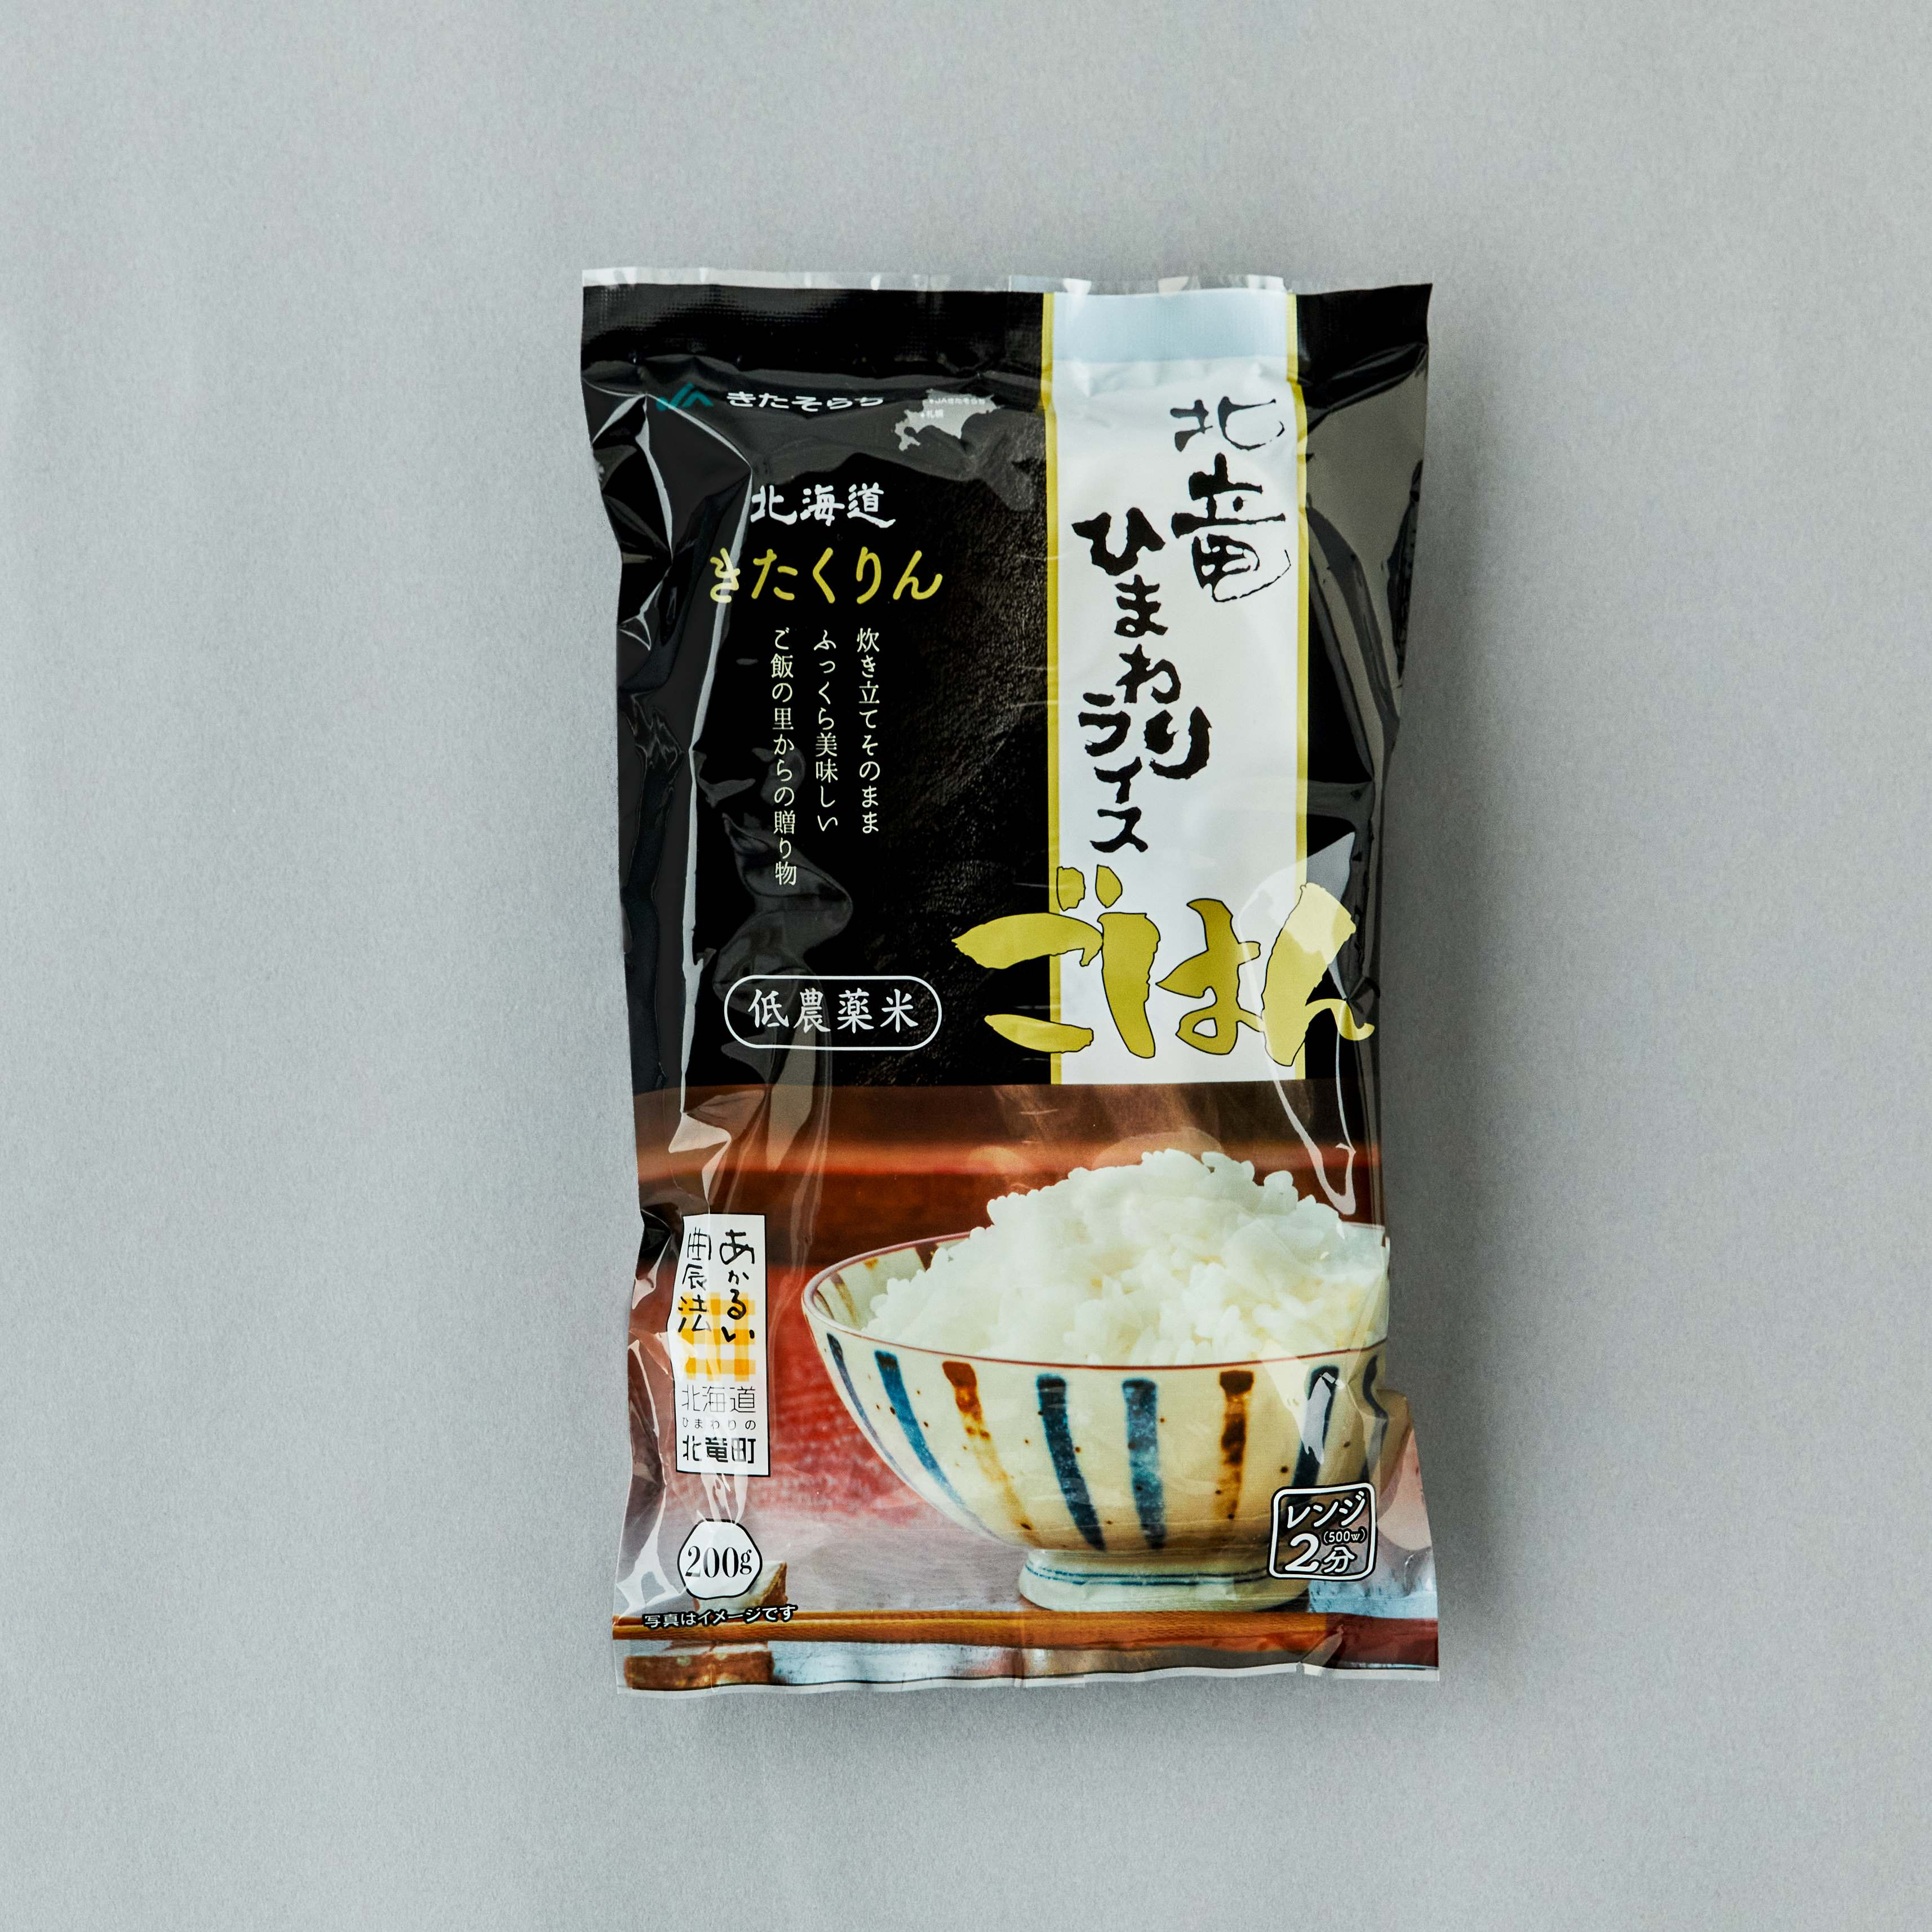 
パックご飯（きたくりん）×6
